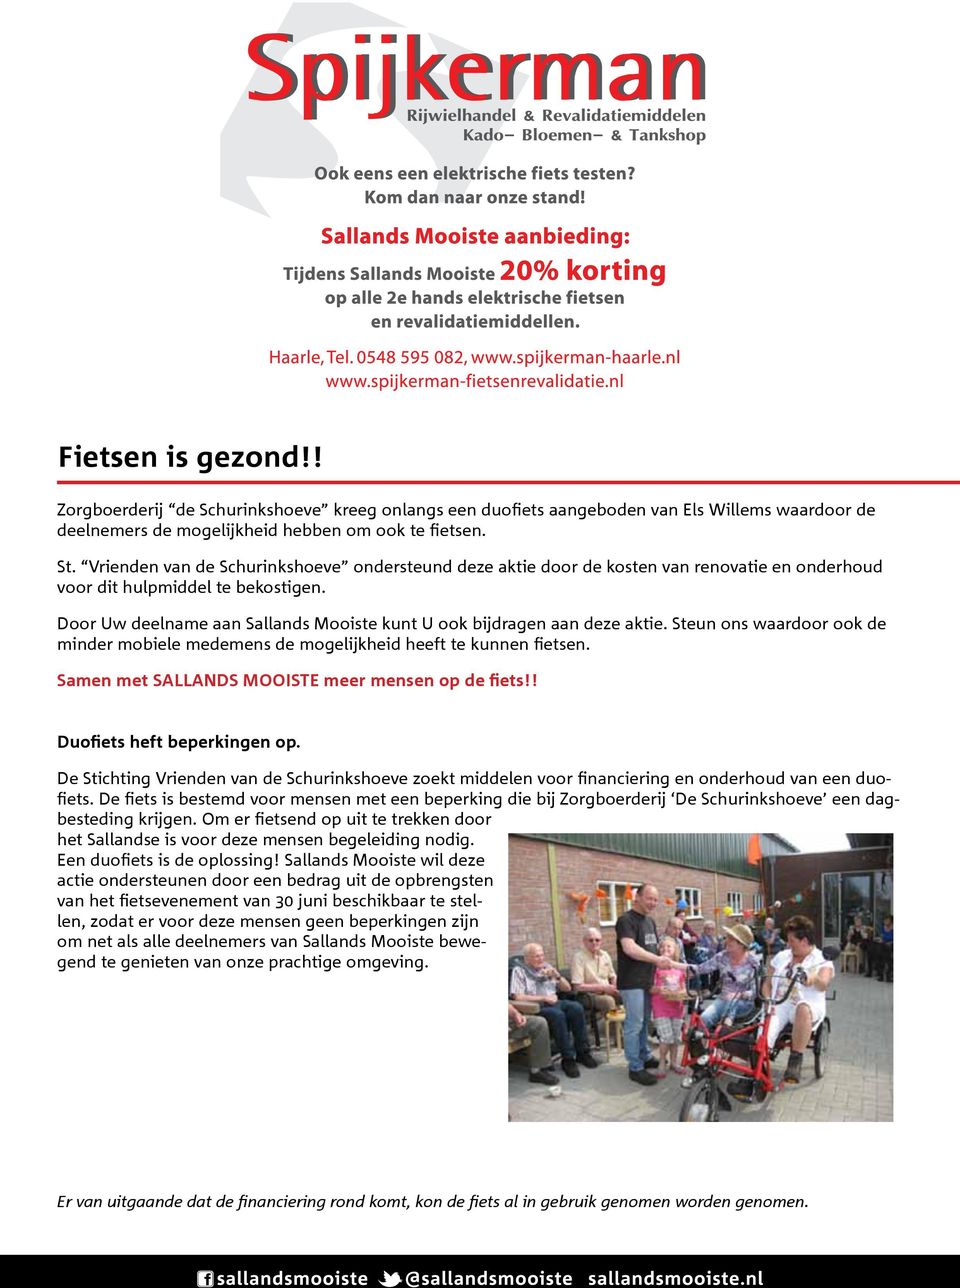 Door Uw deelname aan Sallands Mooiste kunt U ook bijdragen aan deze aktie. Steun ons waardoor ook de minder mobiele medemens de mogelijkheid heeft te kunnen fietsen.